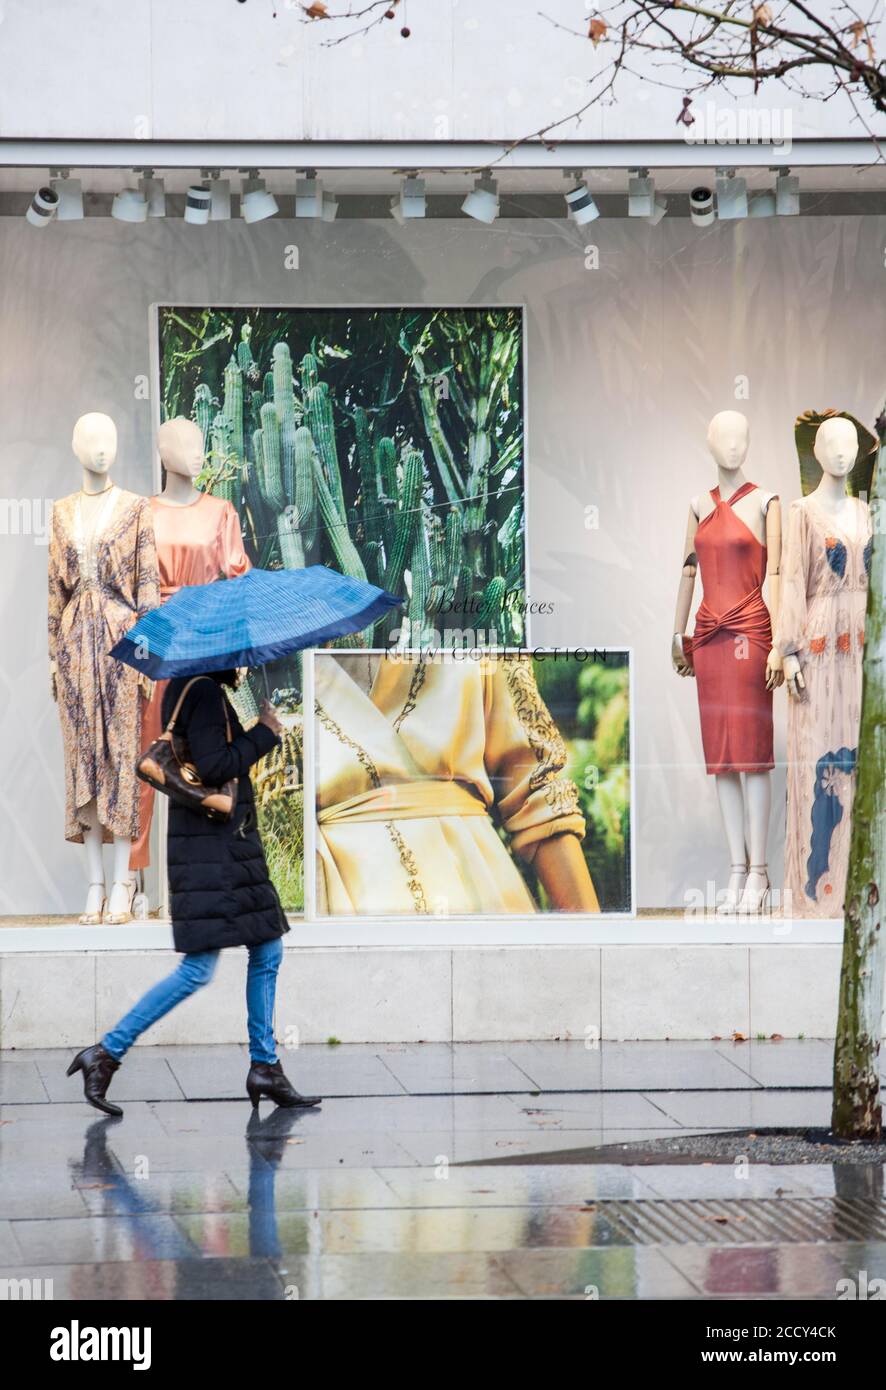 Une femme avec un parapluie bleu descend la rue serrano, l'une des plus visitées et pleine de boutiques de mode, Madrid Banque D'Images